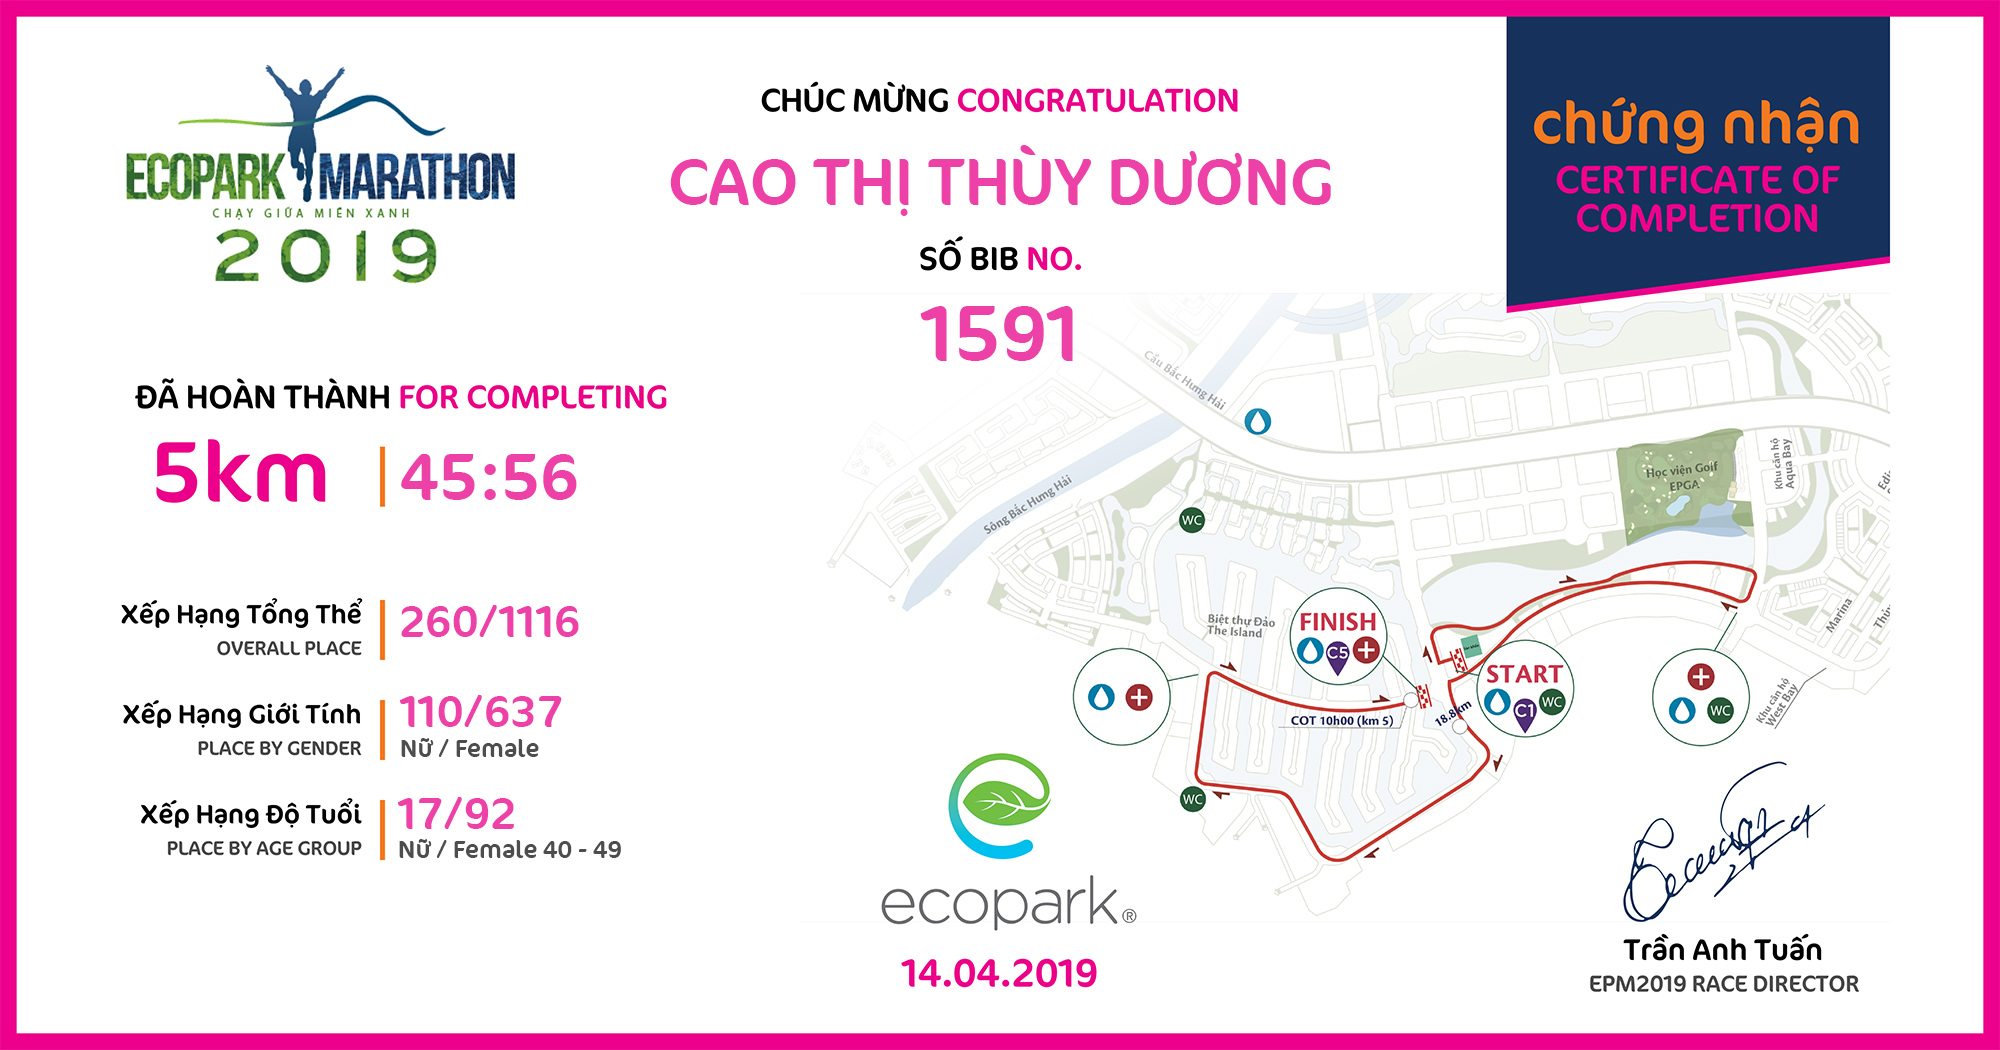 1591 - Cao Thị Thùy Dương